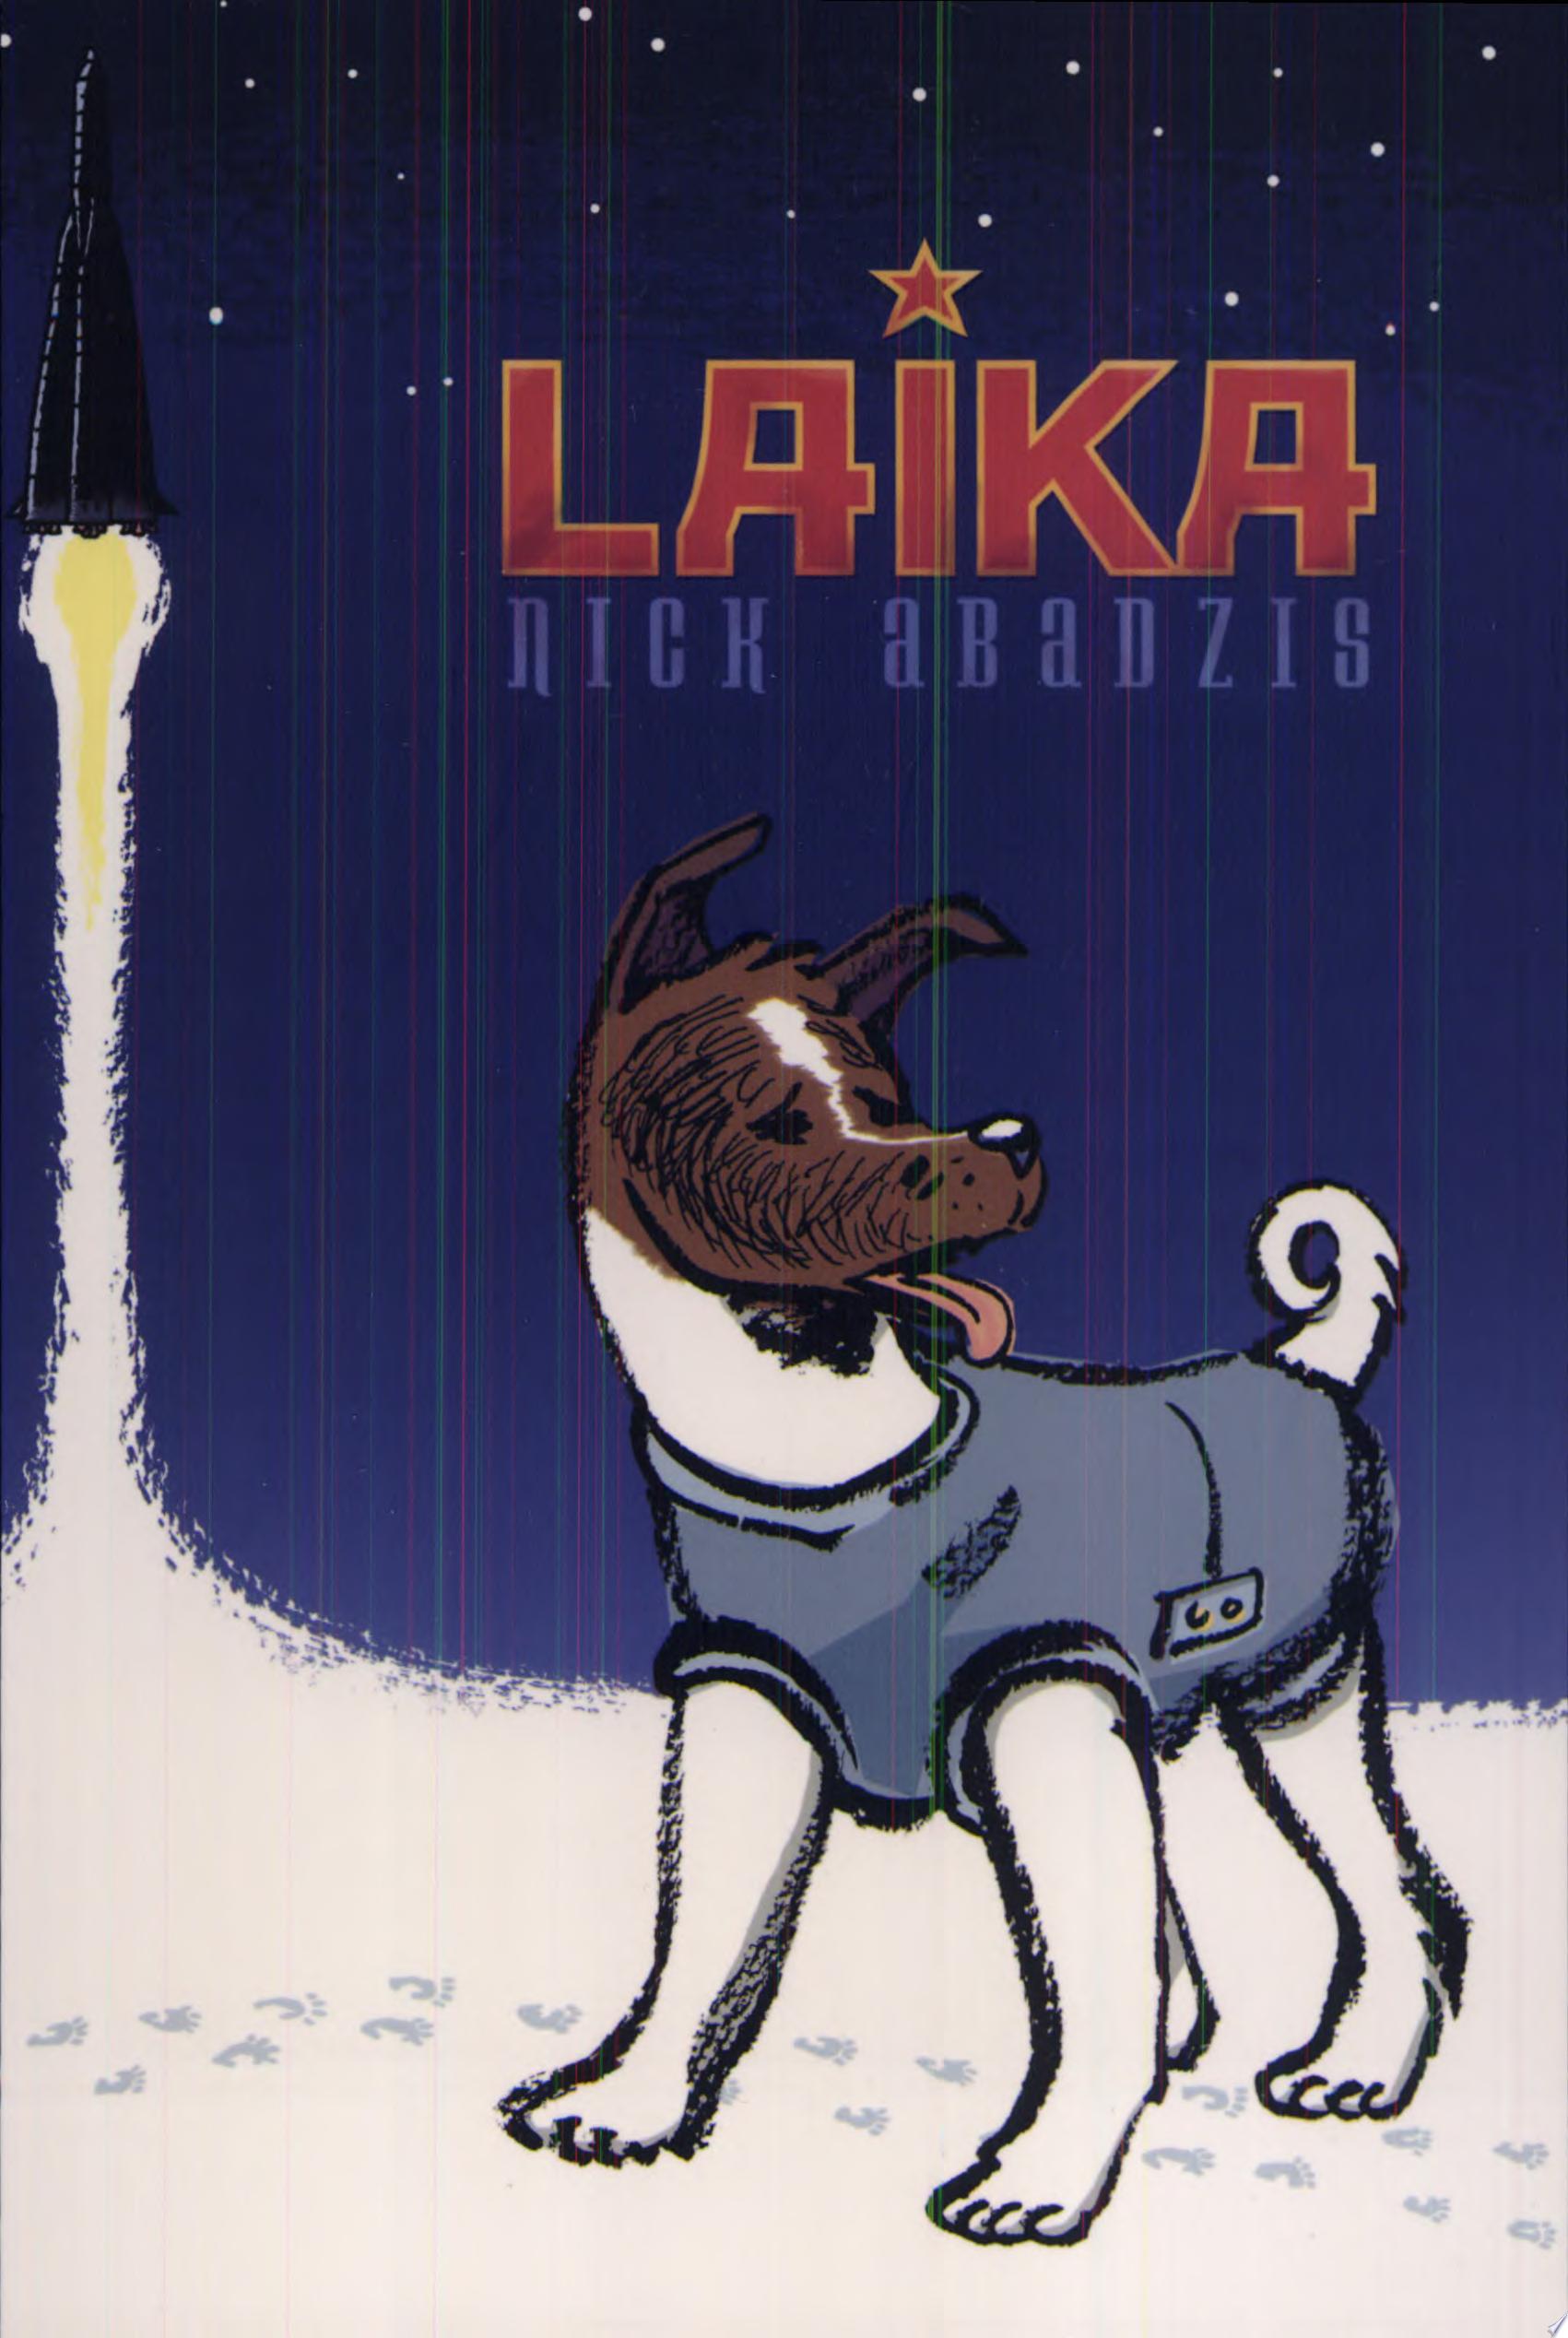 Image for "Laika"